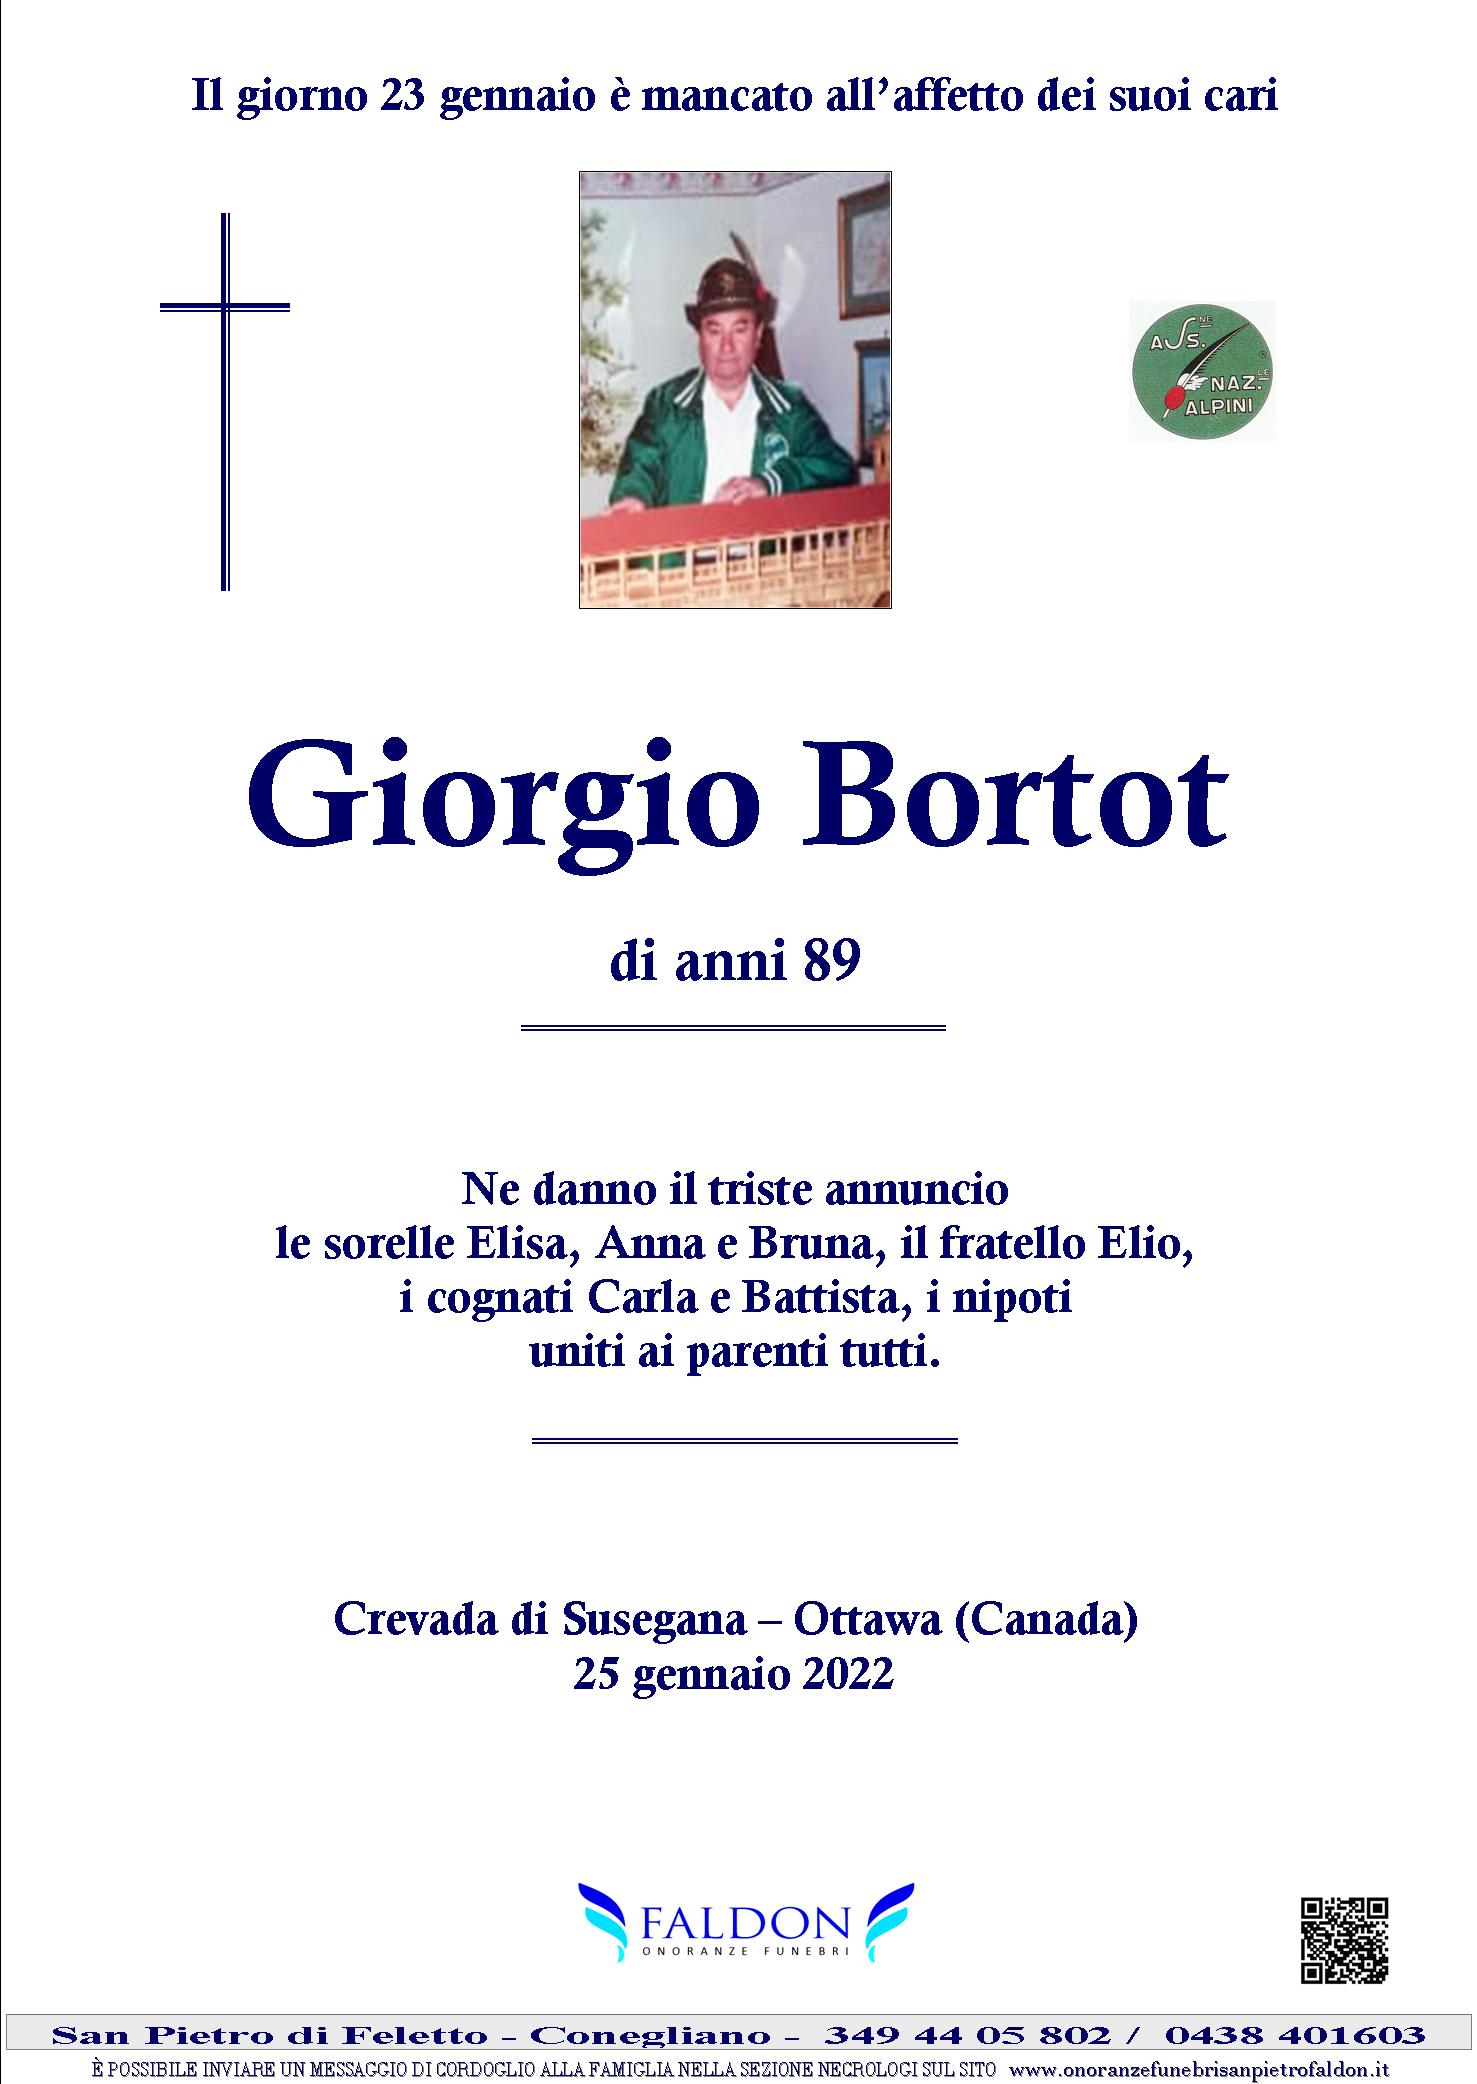 Giorgio Bortot